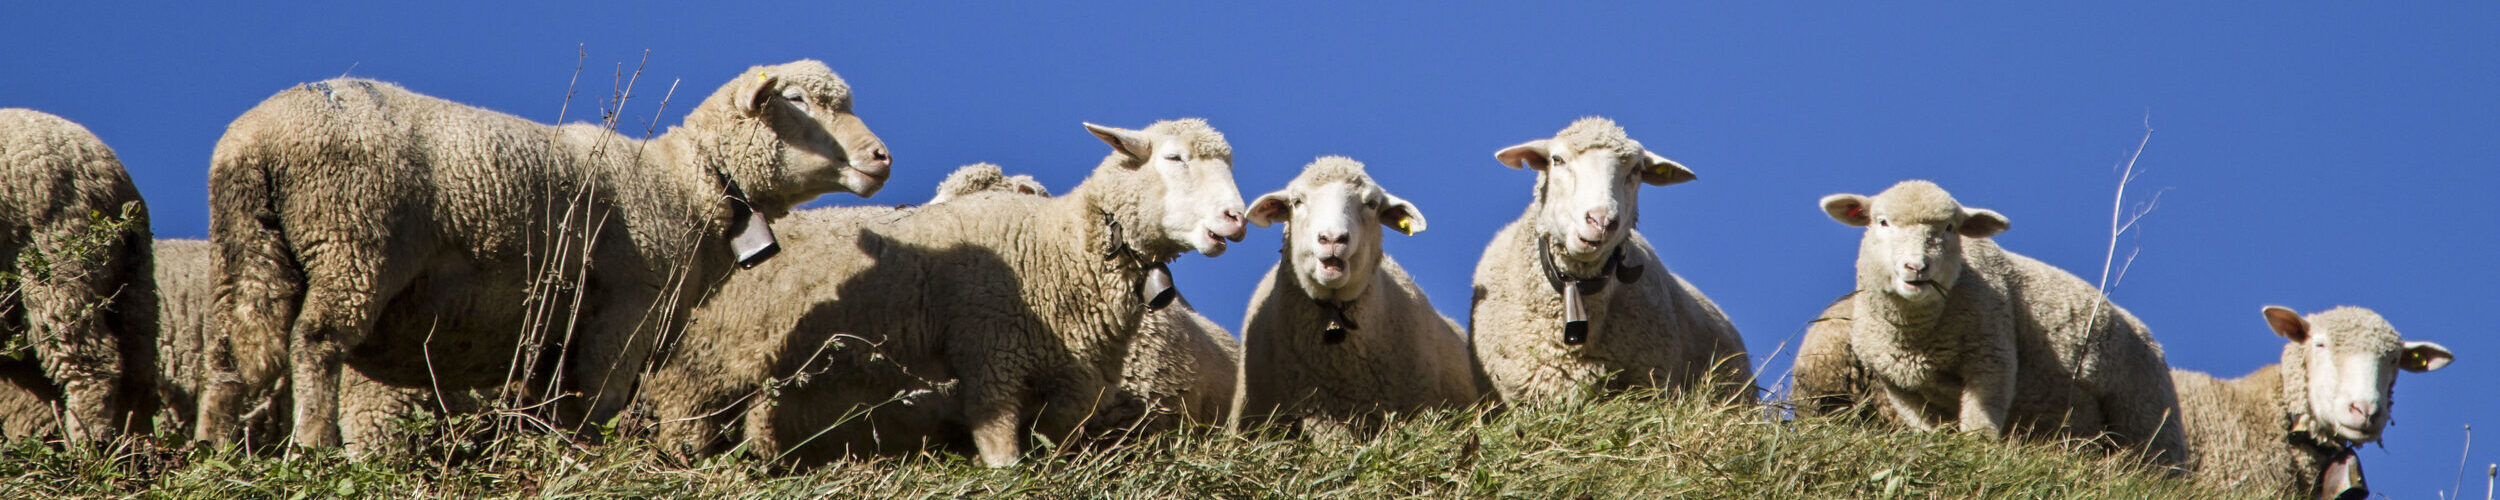 Schaf Herde auf der Alp